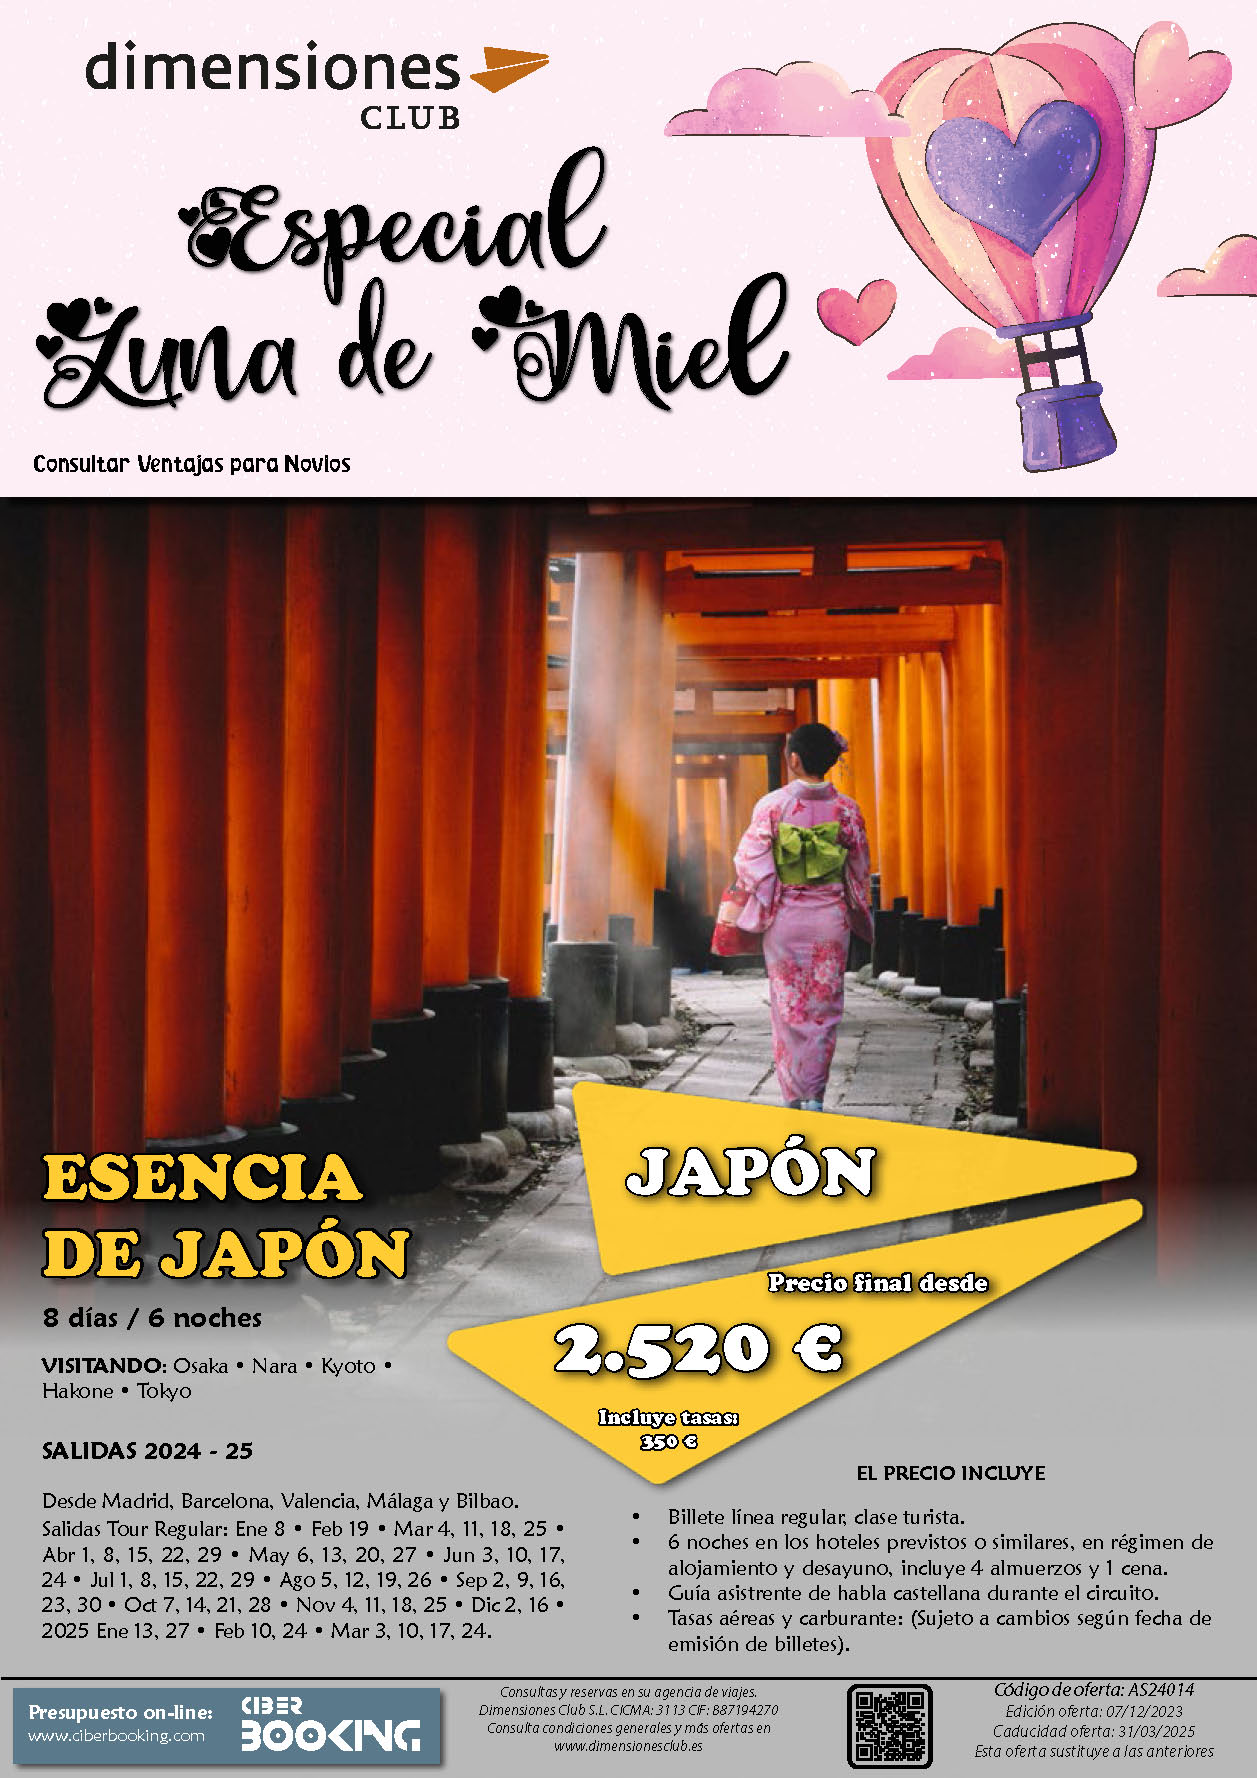 Oferta Dimensiones Club Luna de Miel Esencia de Japon 8 dias salidas desde Madrid Barcelona Bilbao Valencia Malaga Enero 2024 a Marzo 2025